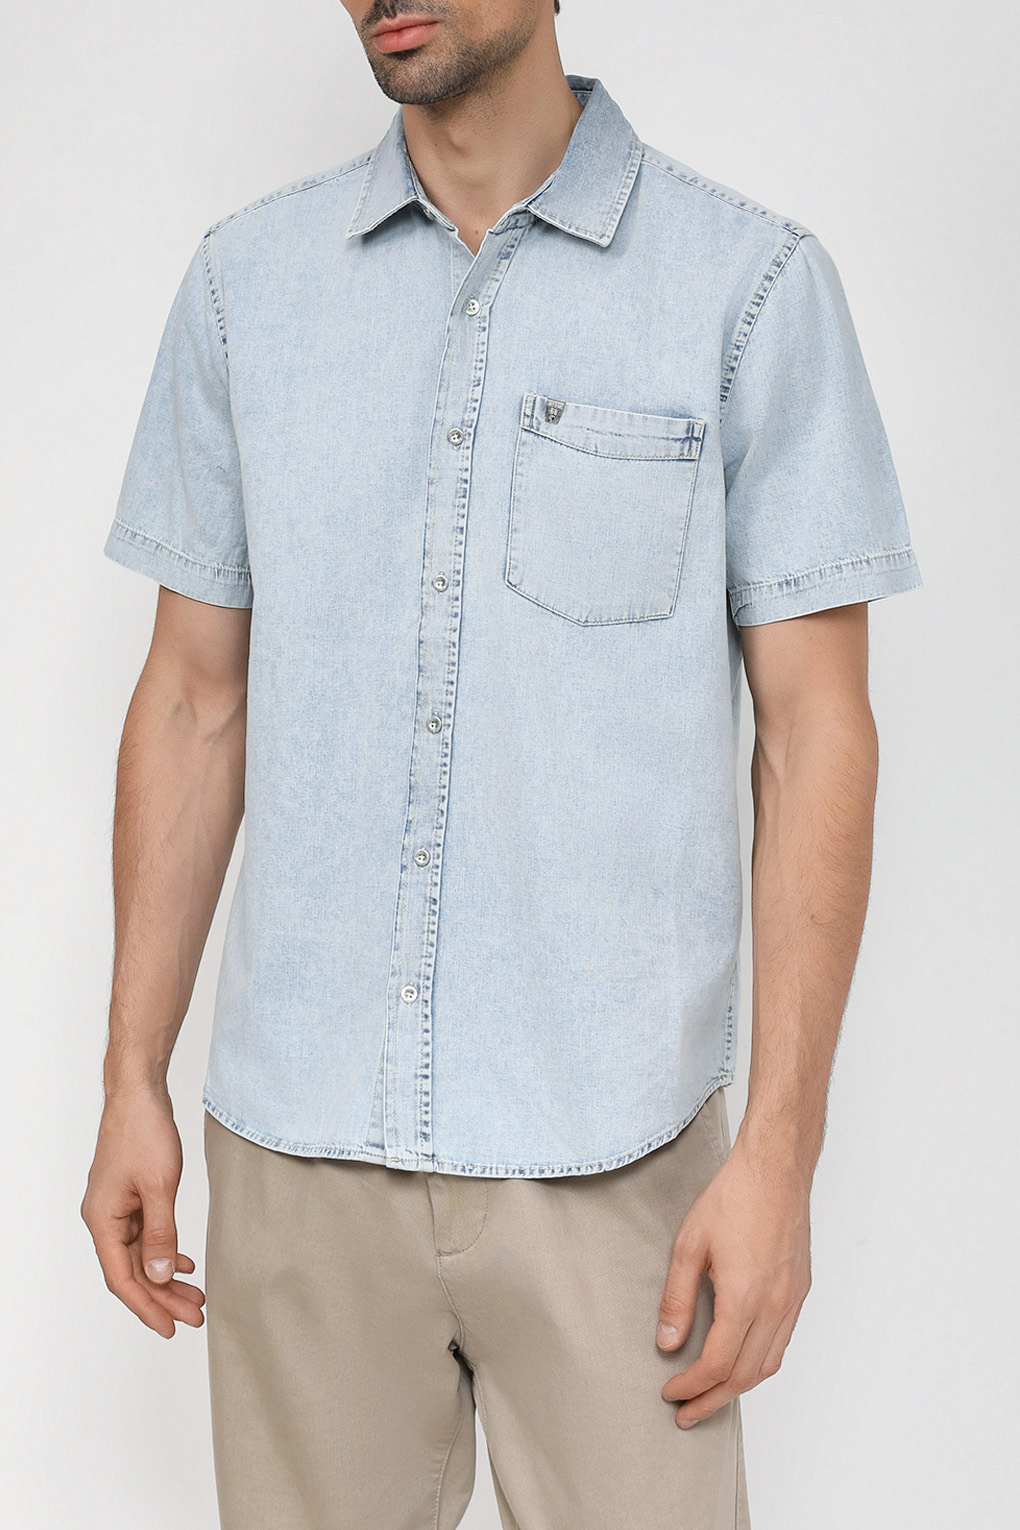 Джинсовая рубашка мужская Loft LF2032741 синяя XL